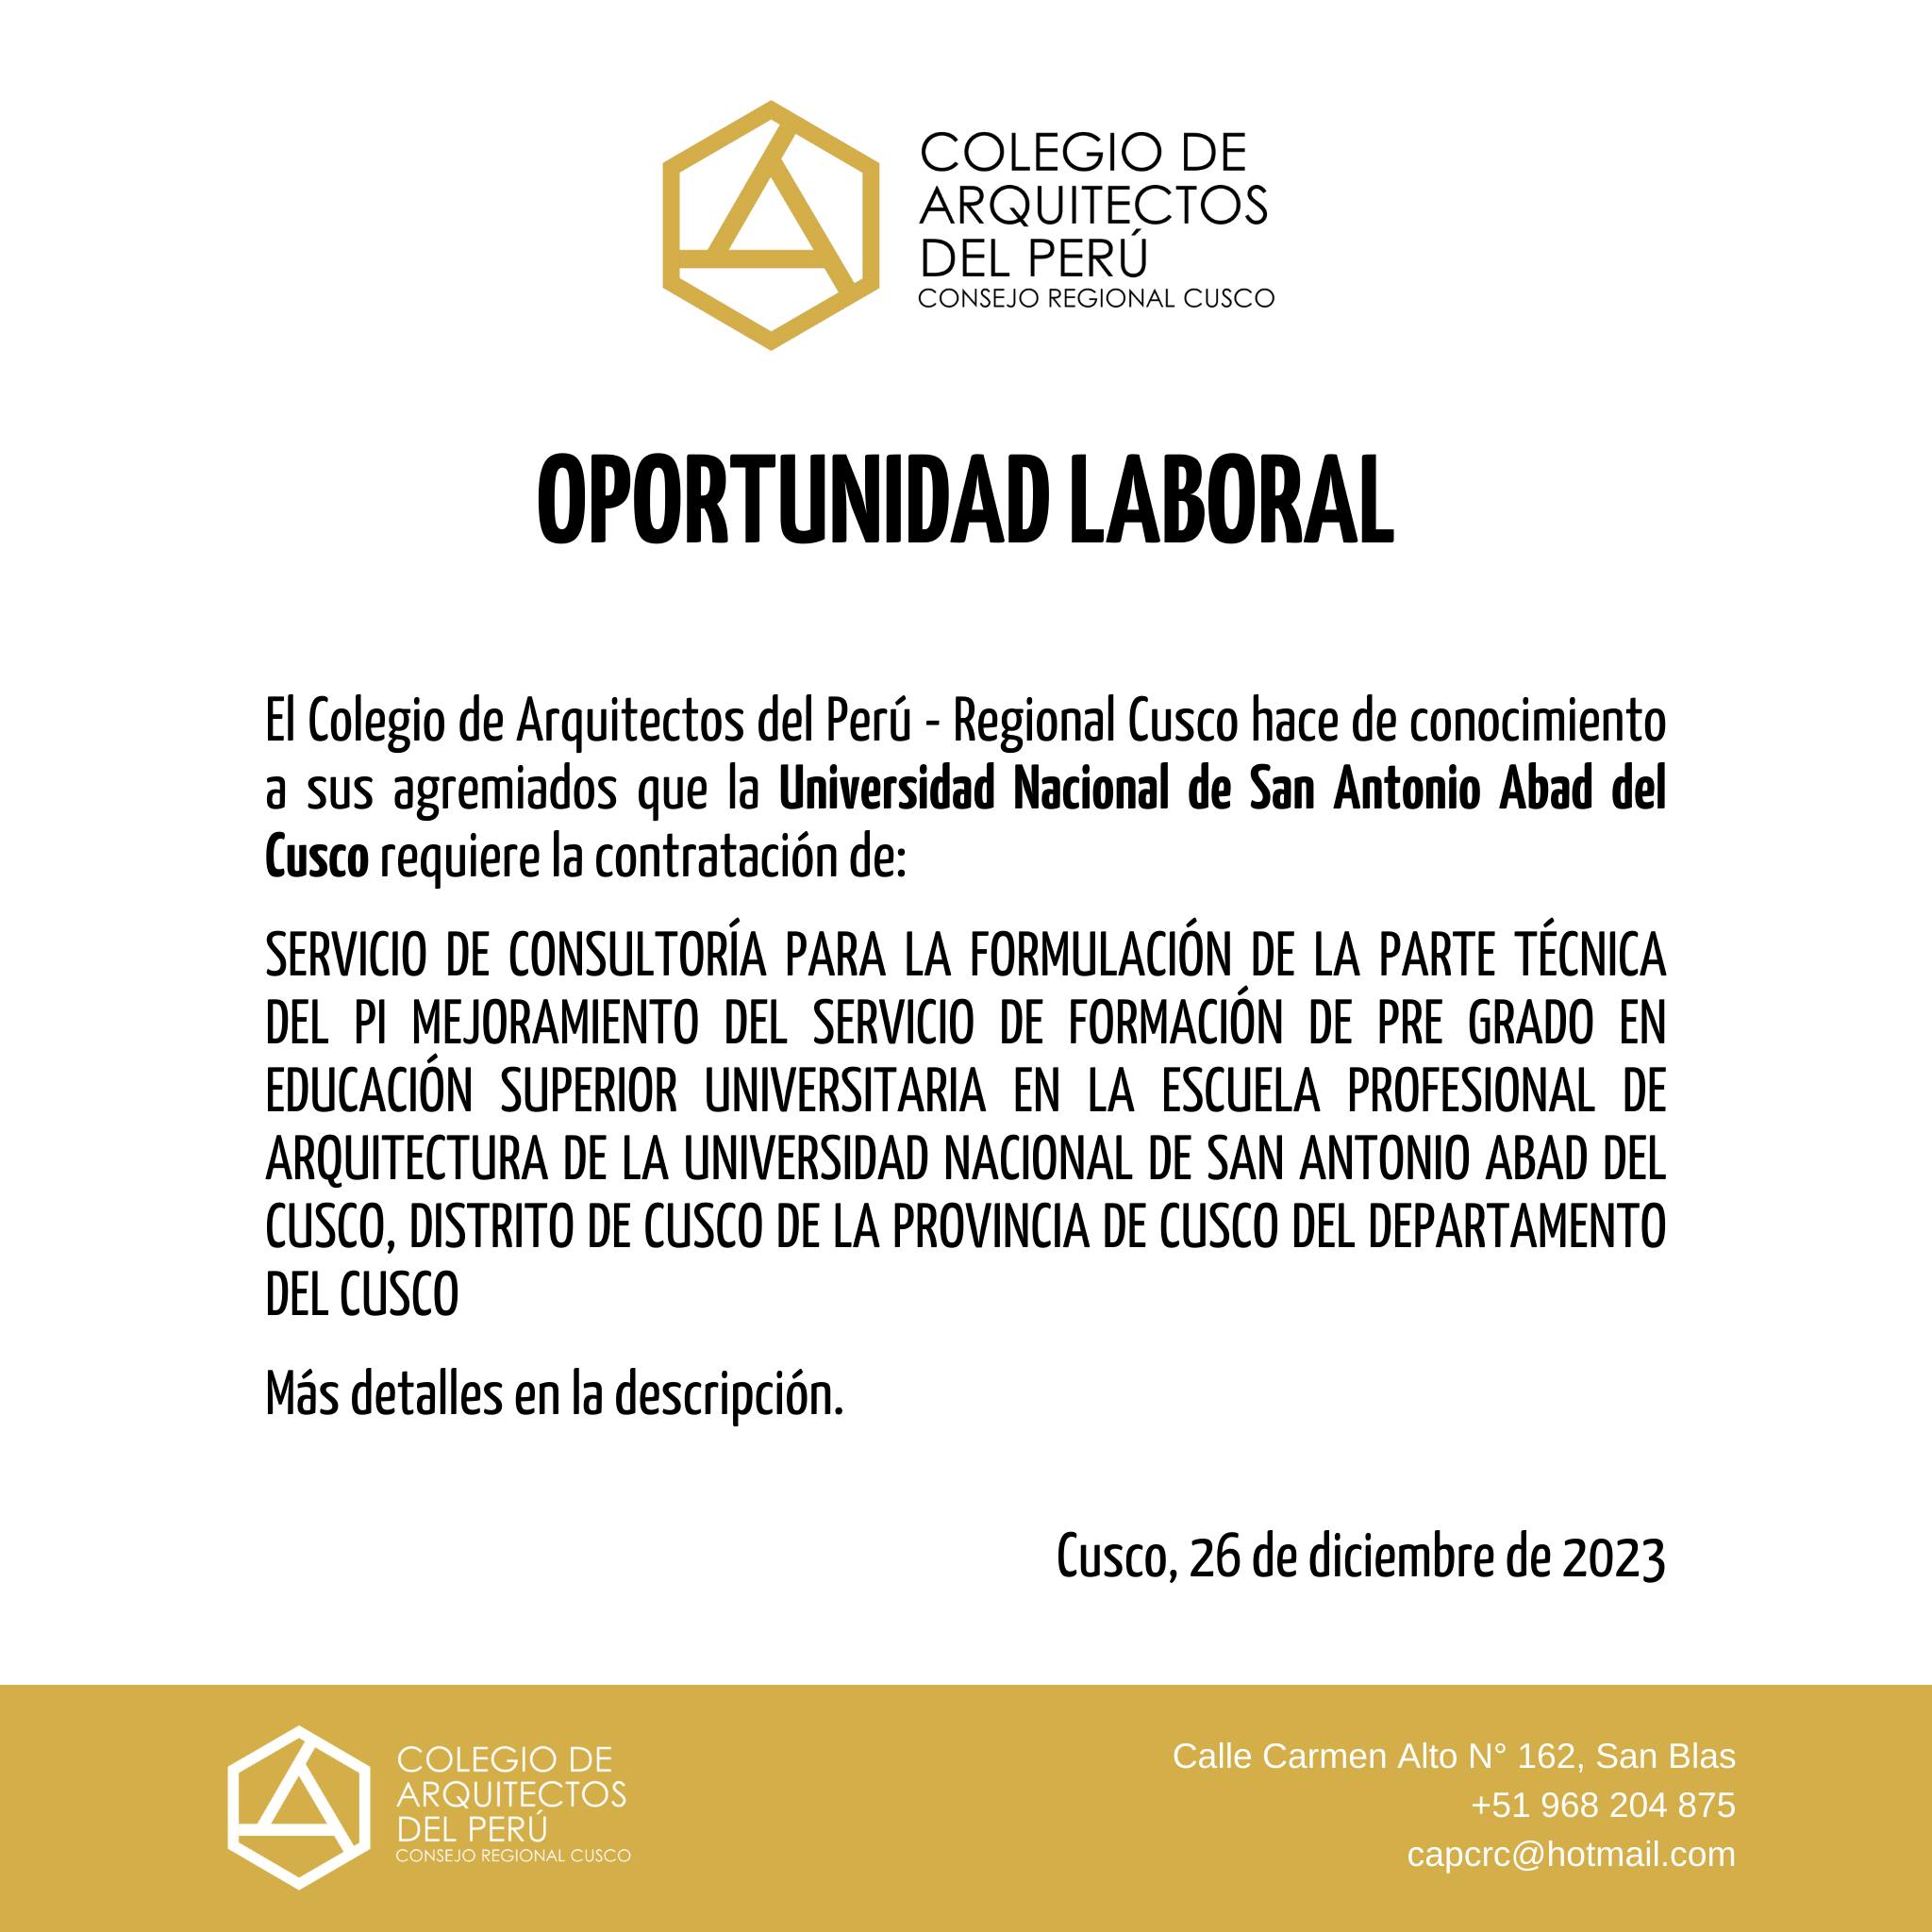 OPORTUNIDAD LABORAL - UNIVERSIDAD NACIONAL DE SAN ANTONIO ABAD DEL CUSCO